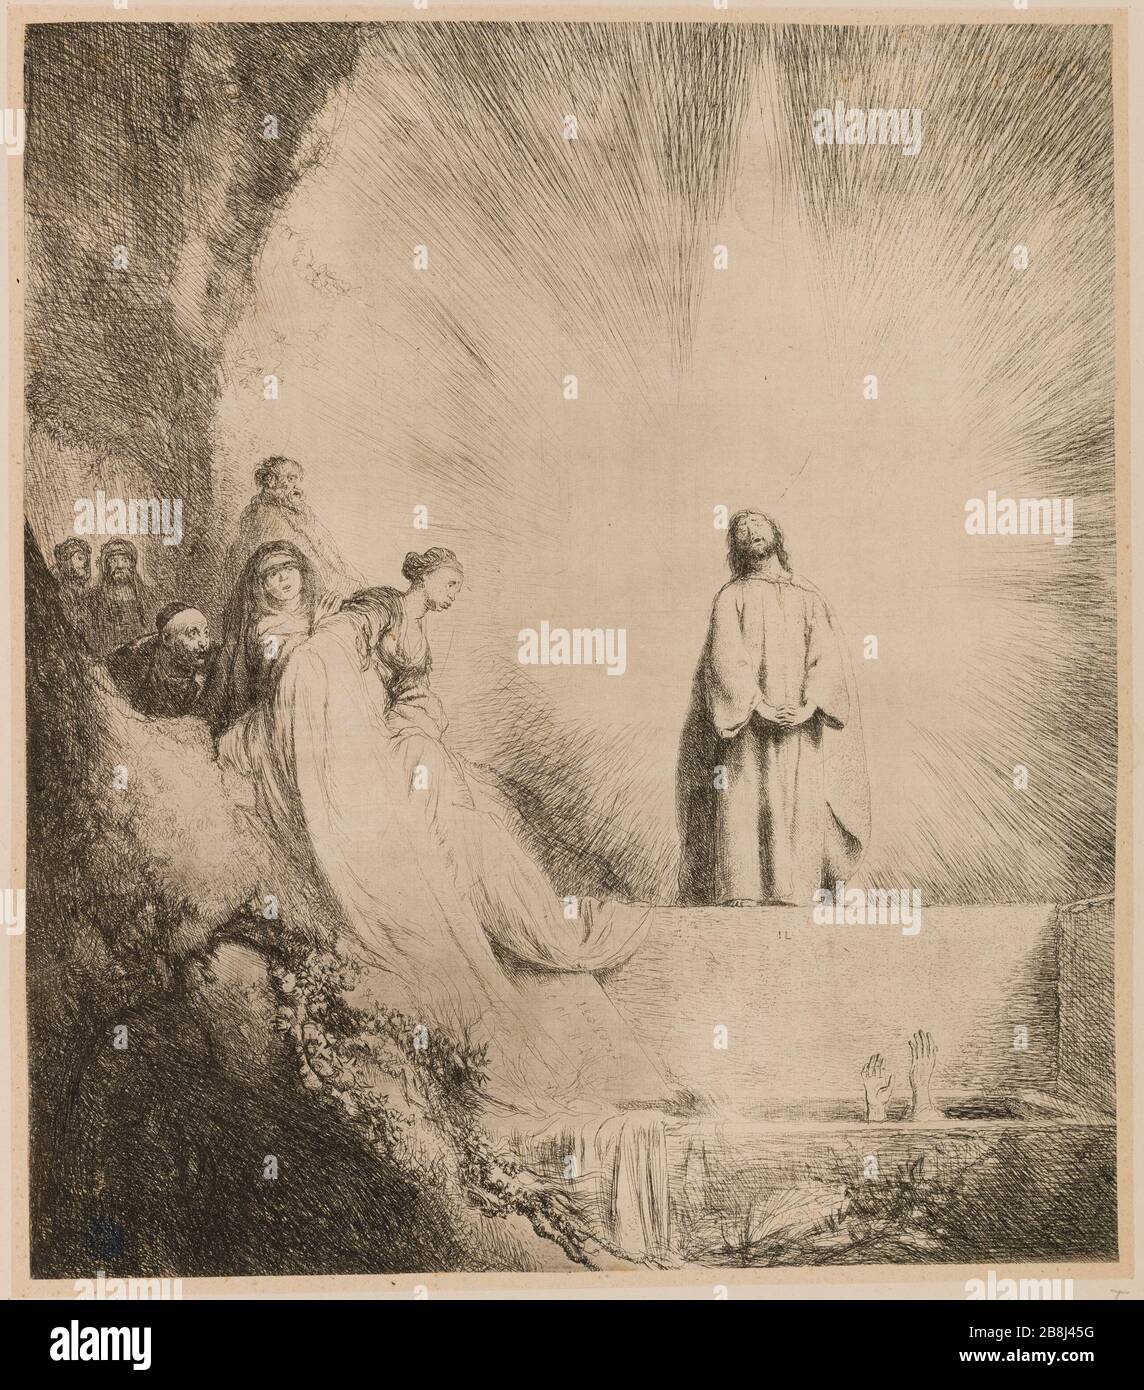 The Raising of Lazarus (Dutuit 3) Lievens, Jan. 'La Résurrection de Lazare (Dutuit 3)'. Eau-forte. 1631-1631. Musée des Beaux-Arts de la Ville de Paris, Petit Palais. Stock Photo